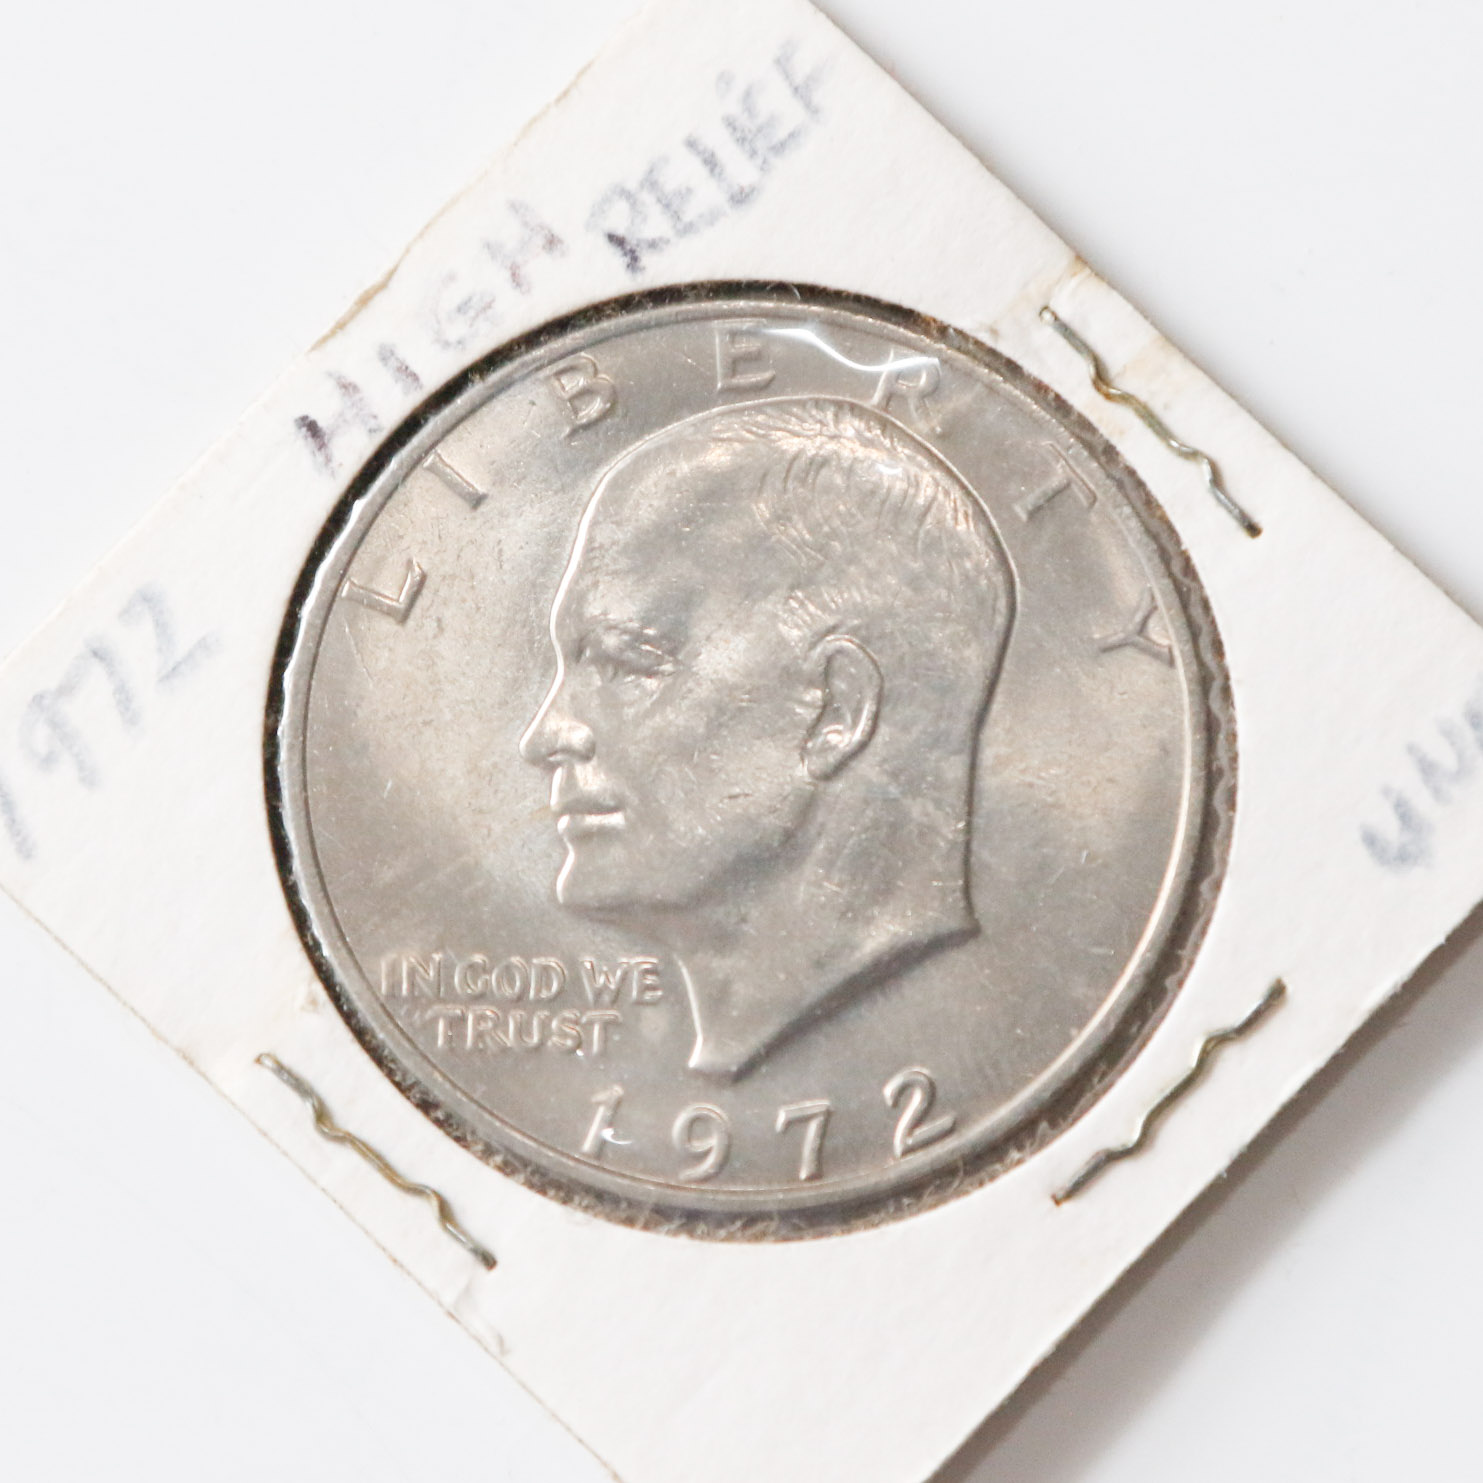 value 1972 silver dollar